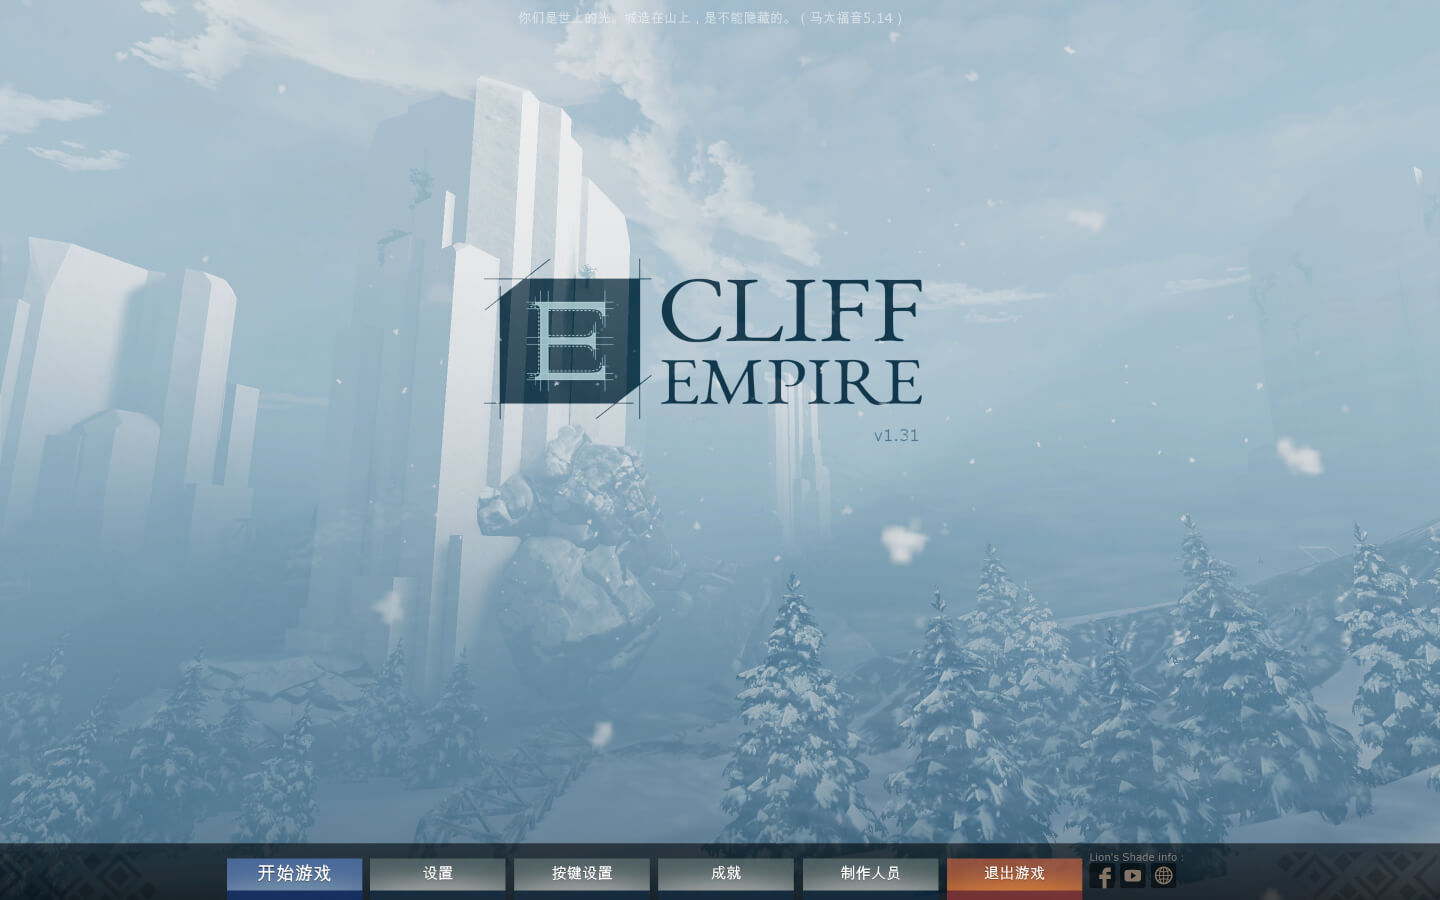 悬崖帝国 Cliff Empire for Mac v1.37 中文原生版-1